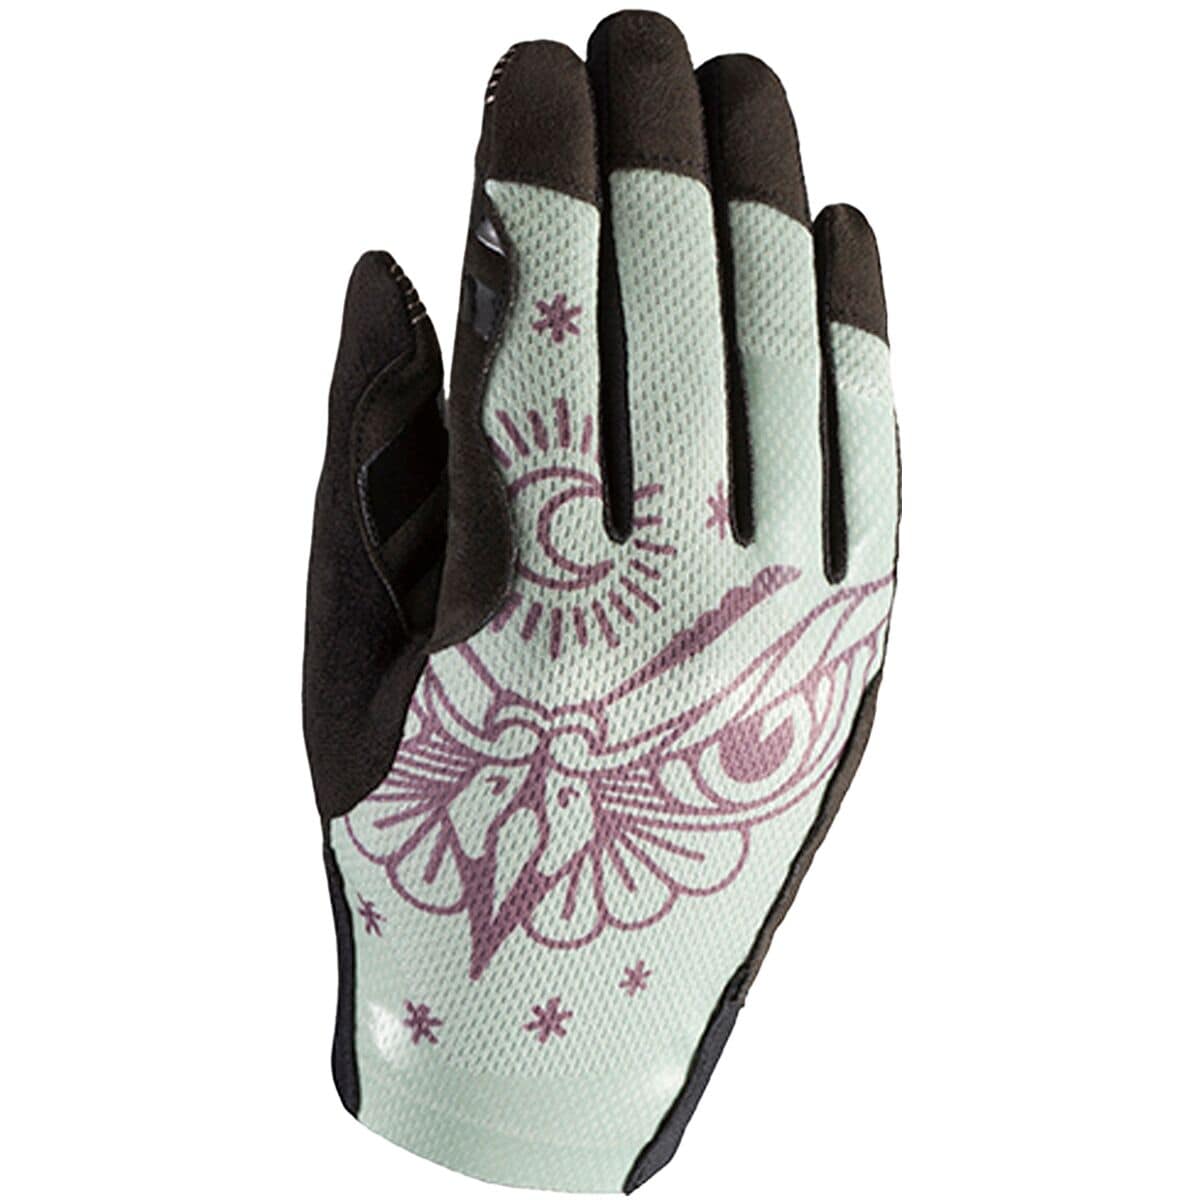 Covert Glove - Women